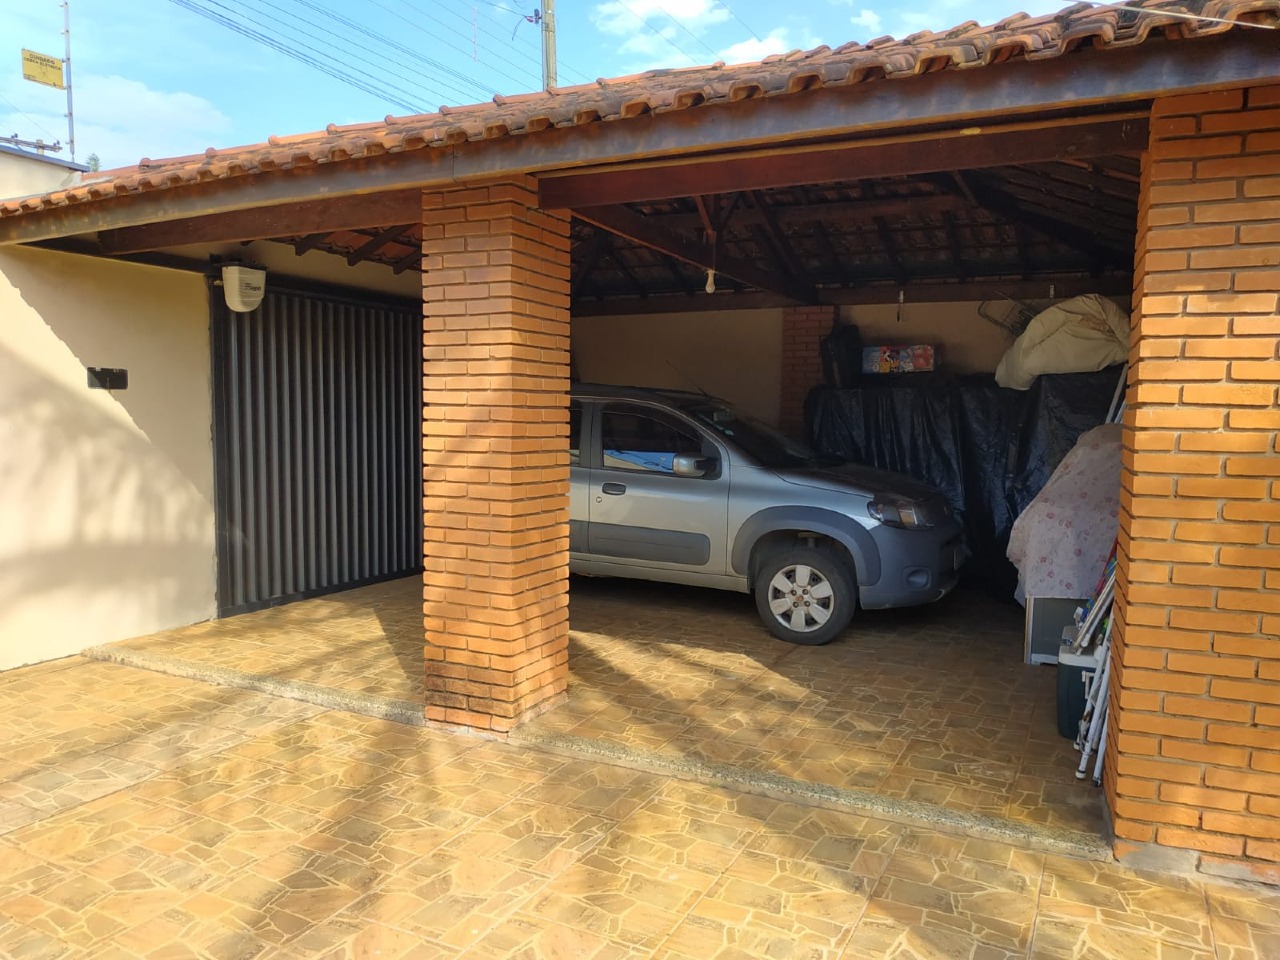 Casa para comprar, 3 quartos, 5 vagas, no bairro Residencial Doutor Jorge Coury em Rio das Pedras - SP